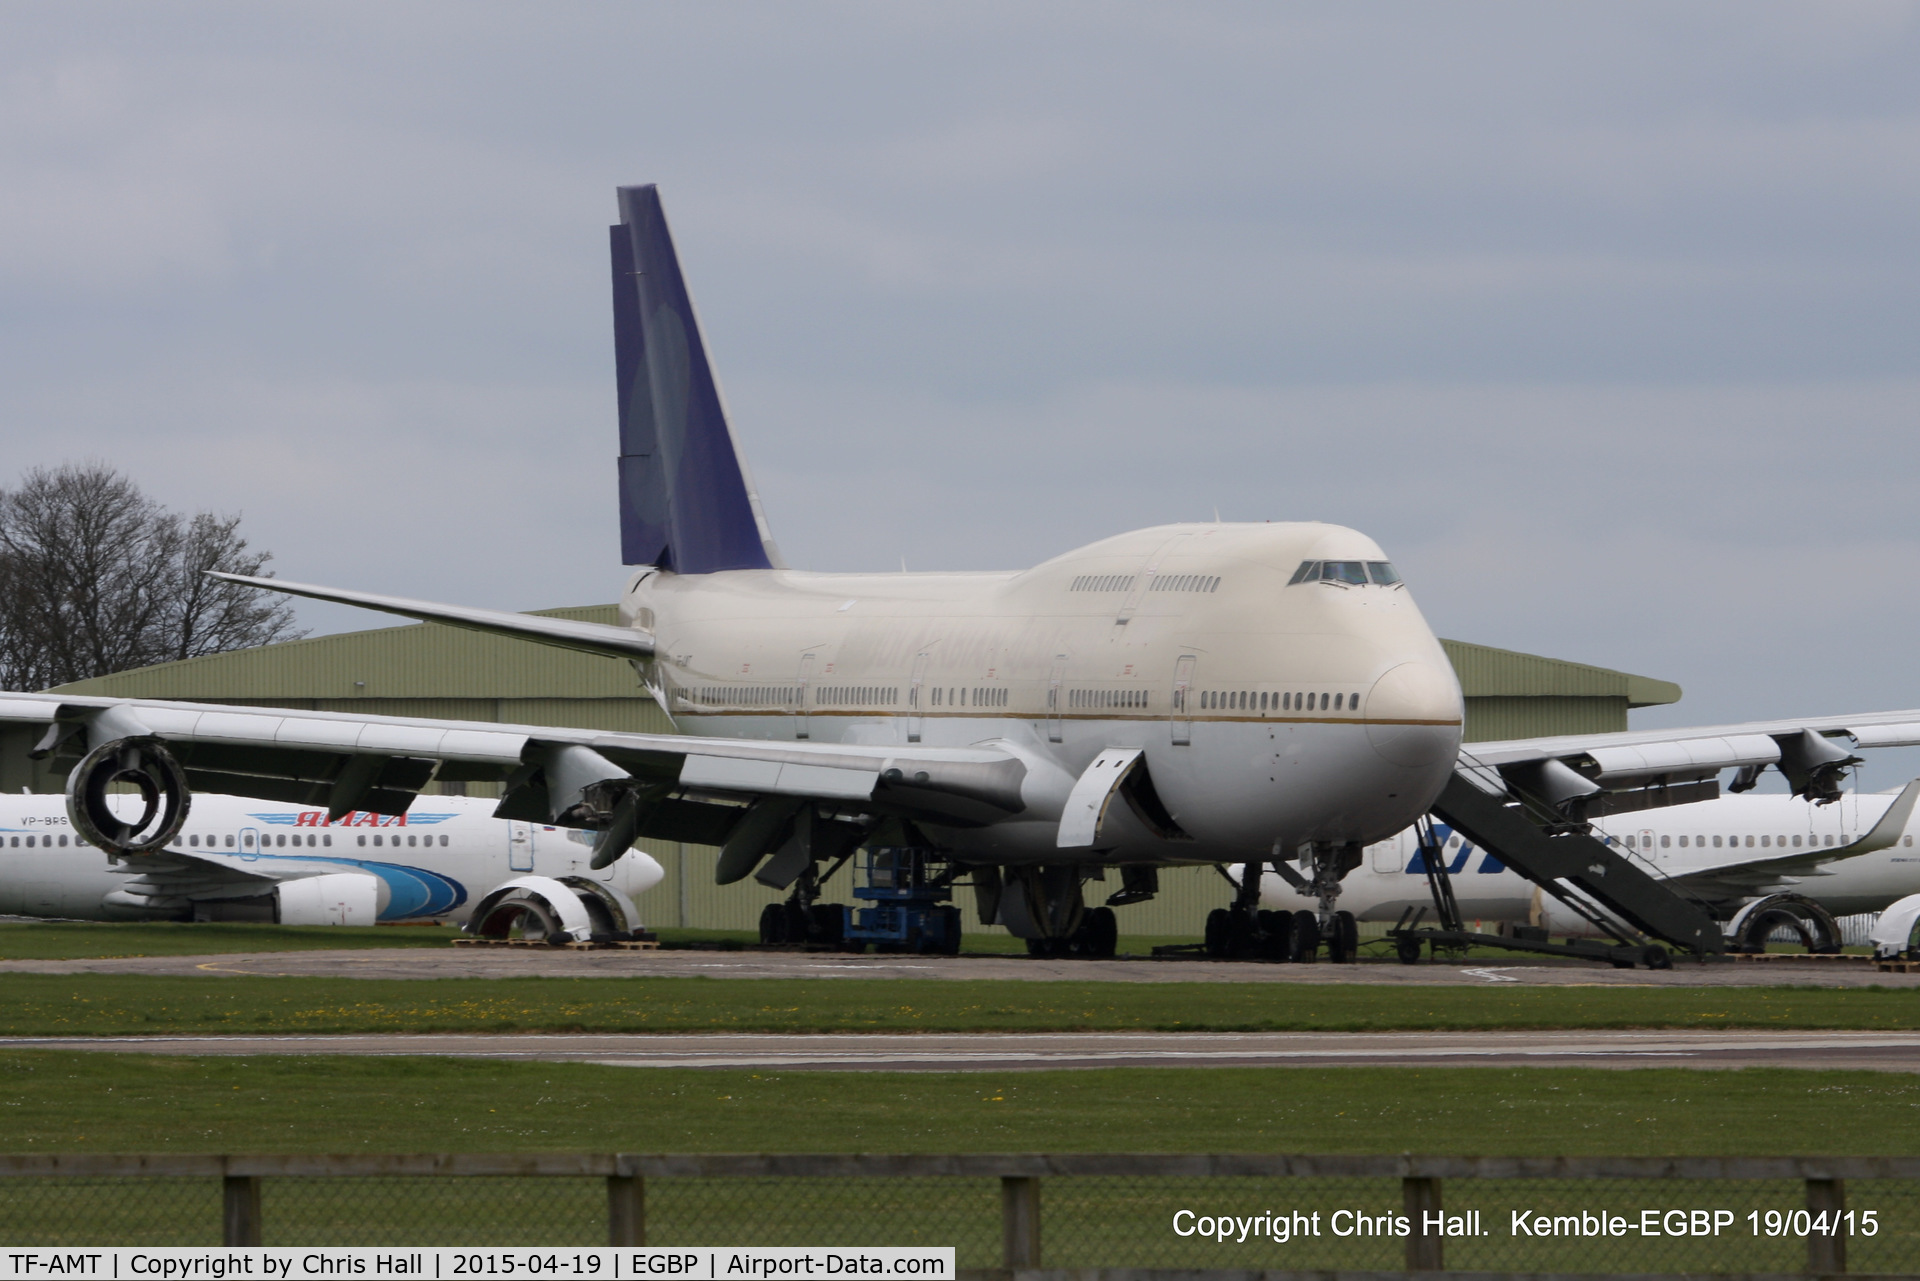 TF-AMT, 1991 Boeing 747-481 C/N 25135, ex Air Atlanta Icelandic/Saudi Arabian Airlines in storage at Kemble